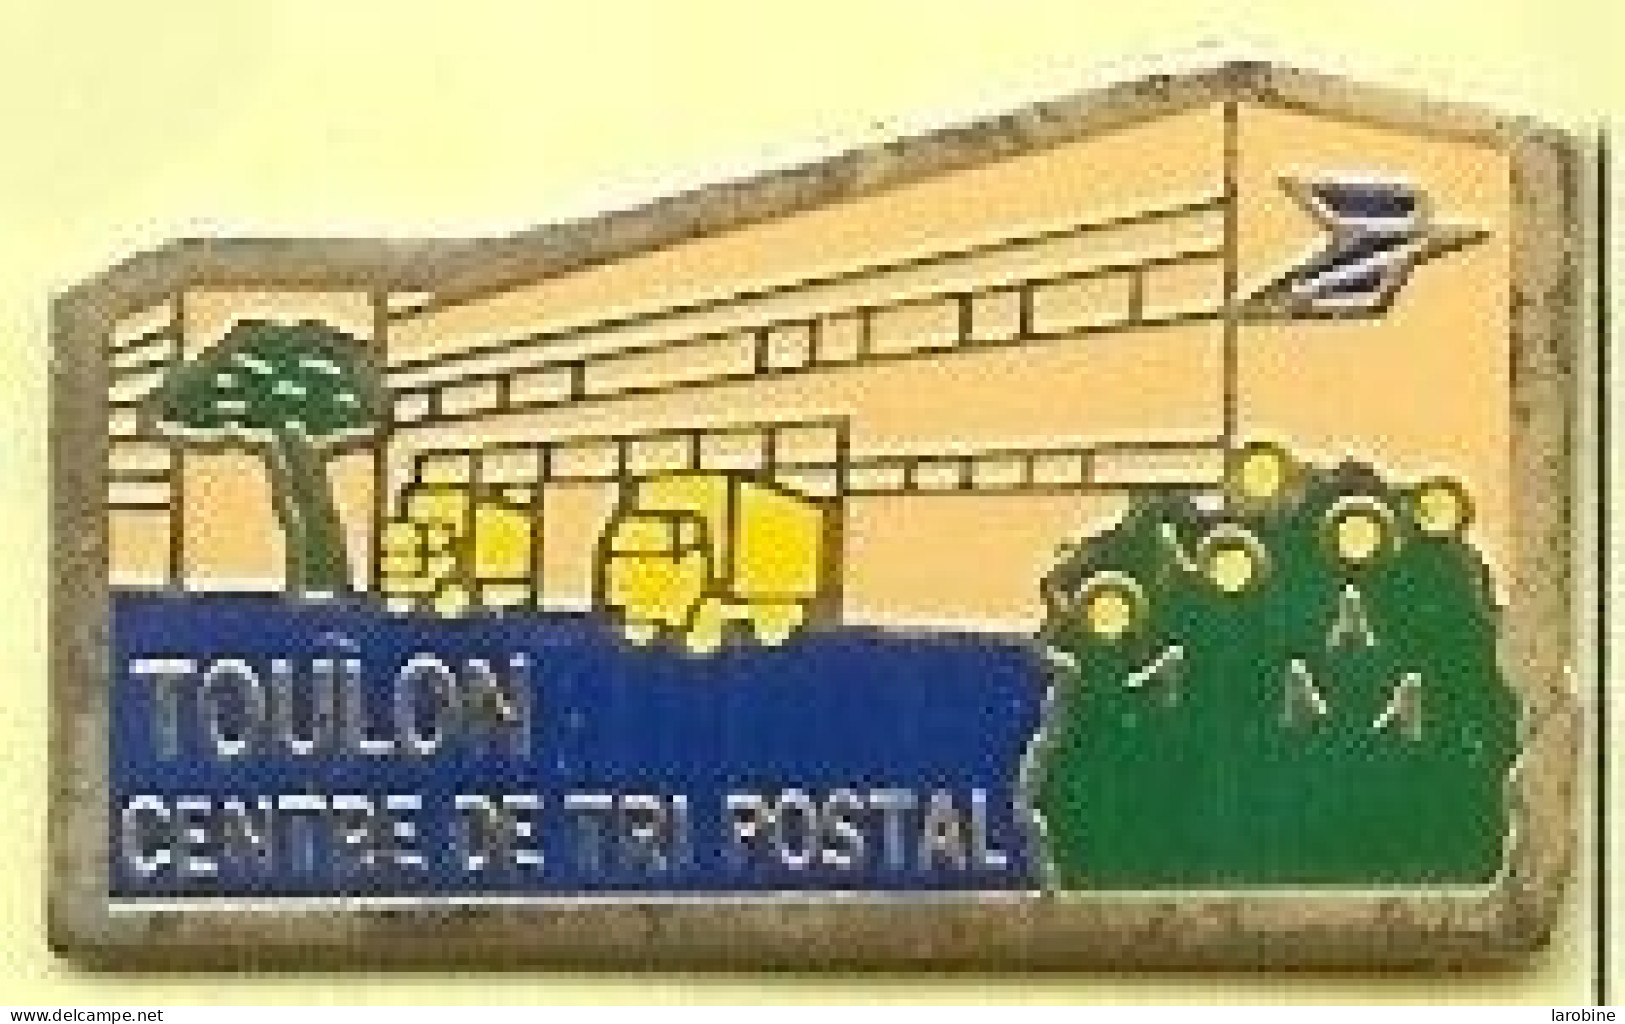 @@ La Poste Centre De Tri Postal De TOULON Var PACA @@po110 - Mail Services